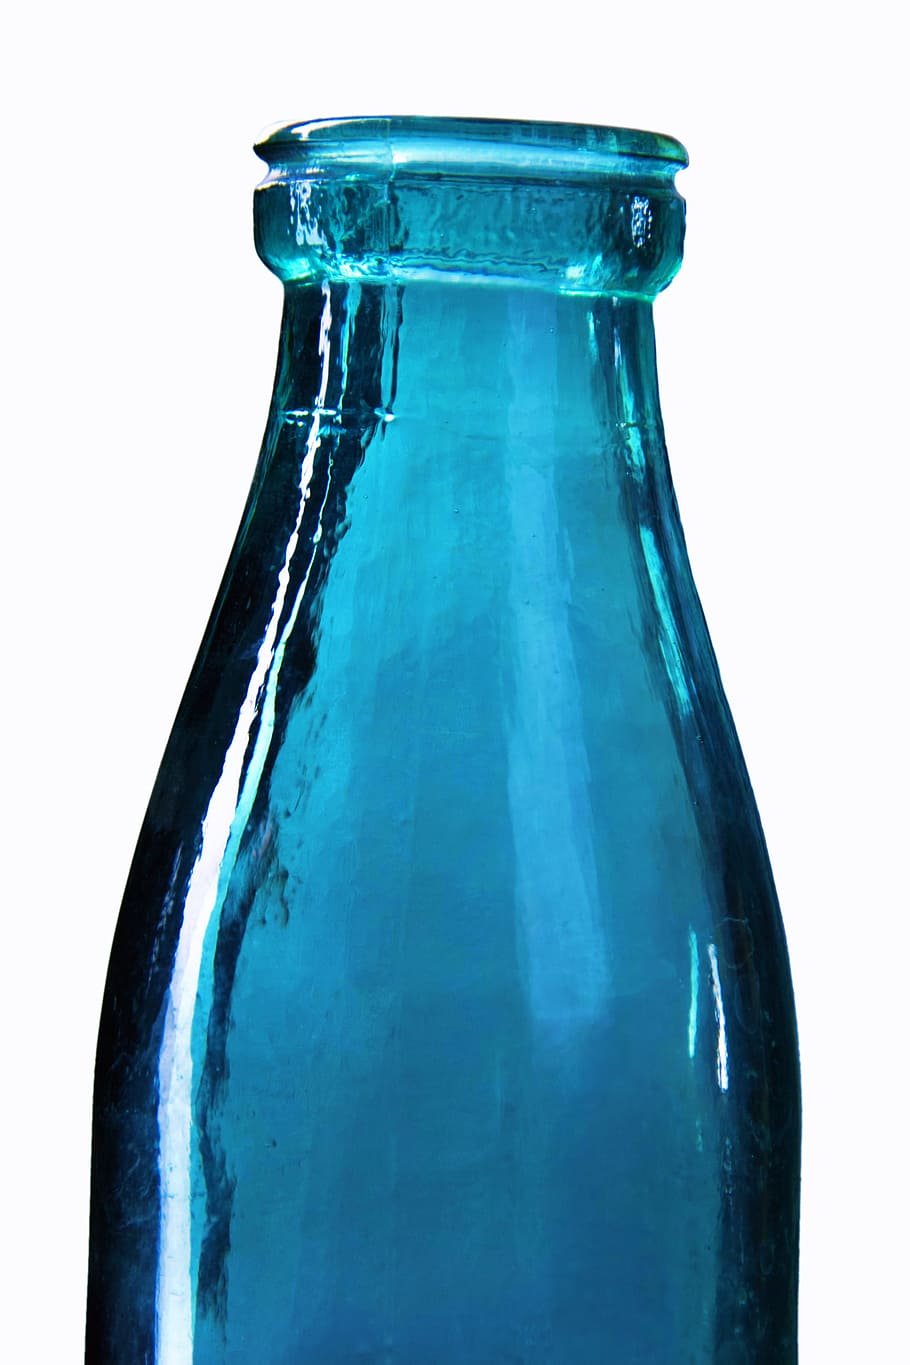 vidro, azul, refrigerante, isolado, molhado, gargalo, claro, ninguém, vibrante, vinícola